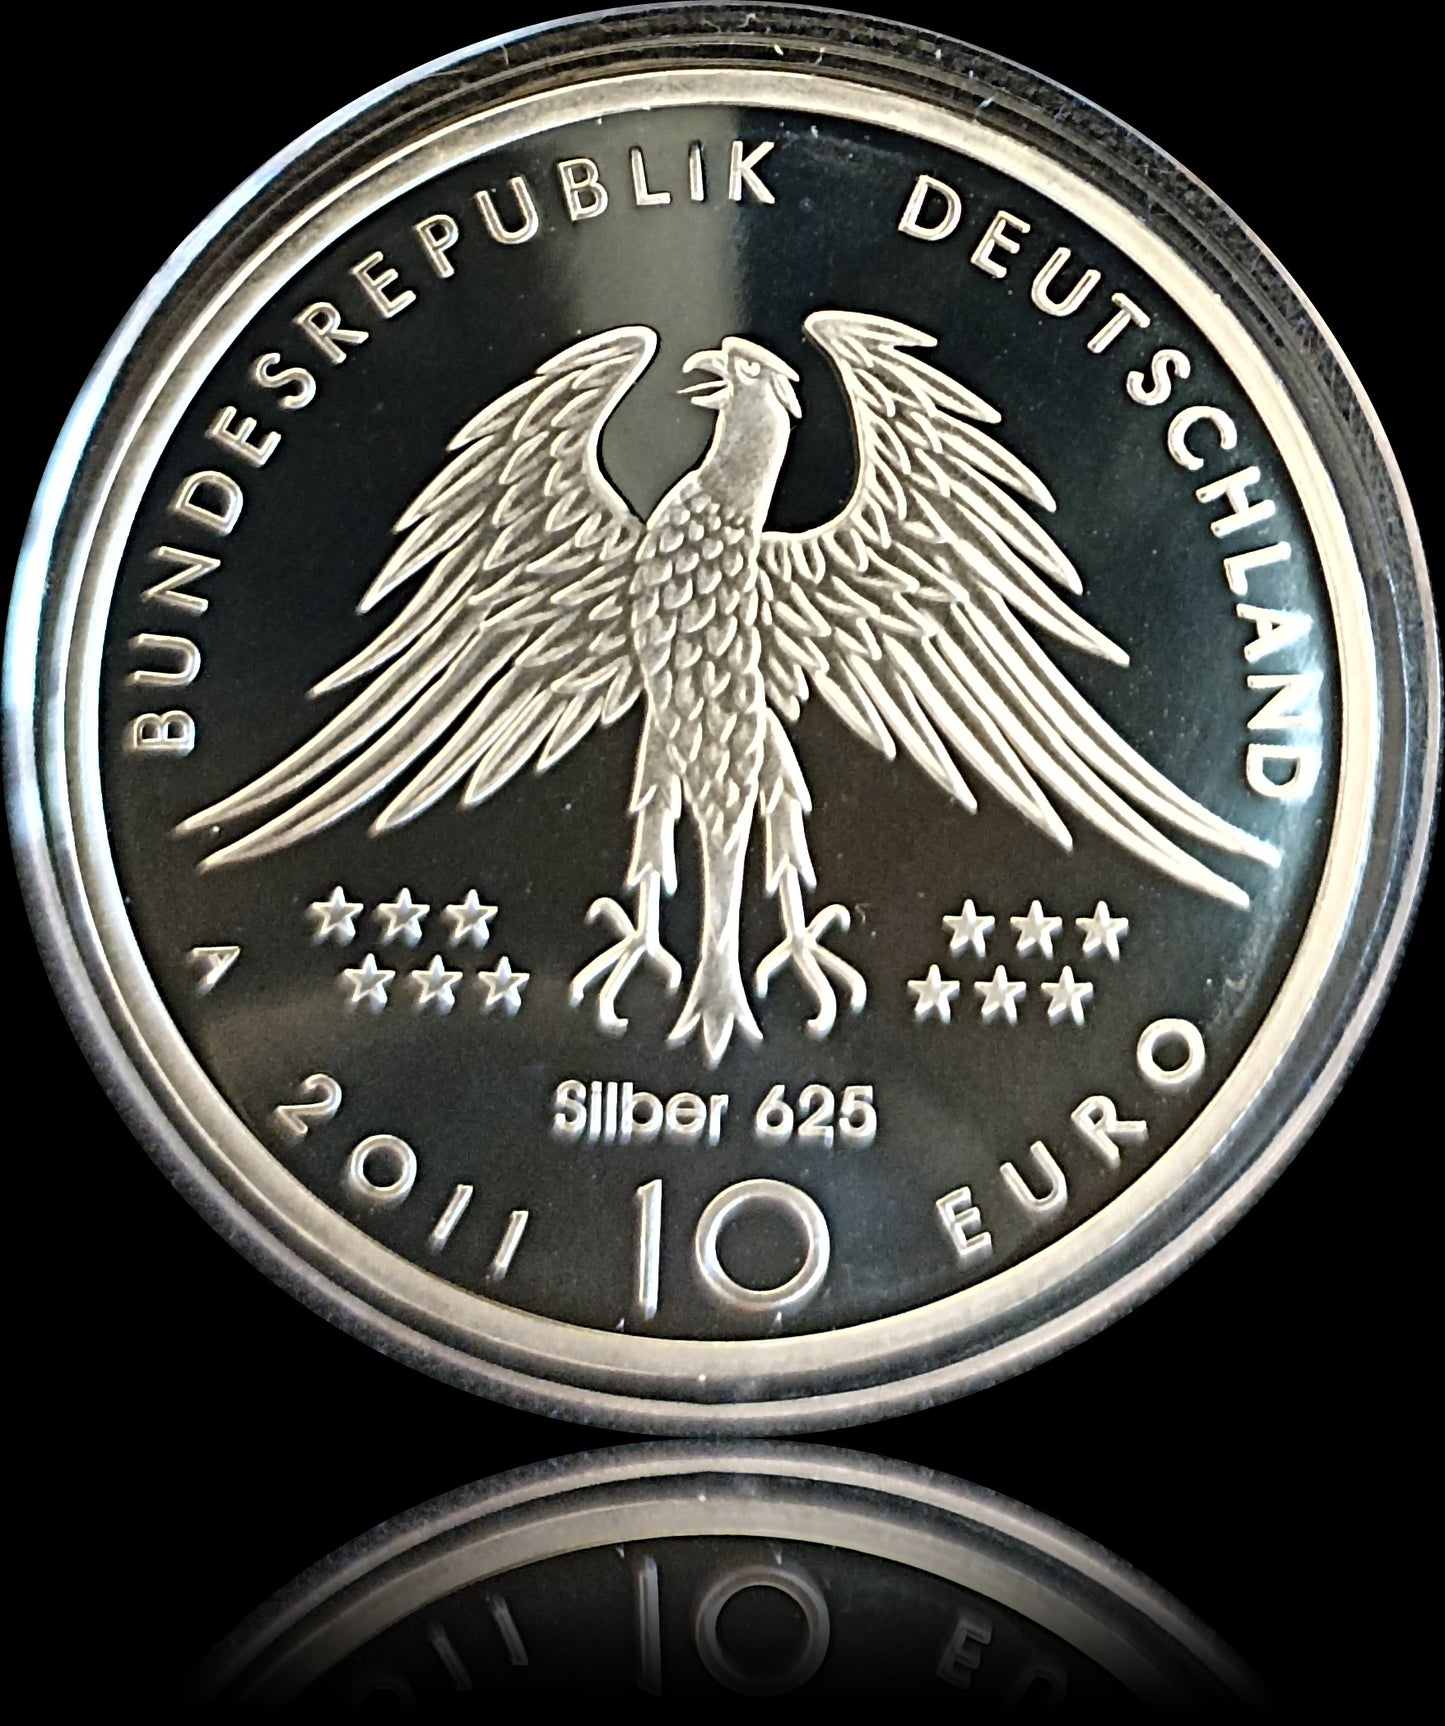 150 JARE ENDECKUNG ARCHEOPTERIX, Serie 10 € Silber Gedenkmünzen Deutschland, Spiegelglanz, 2011